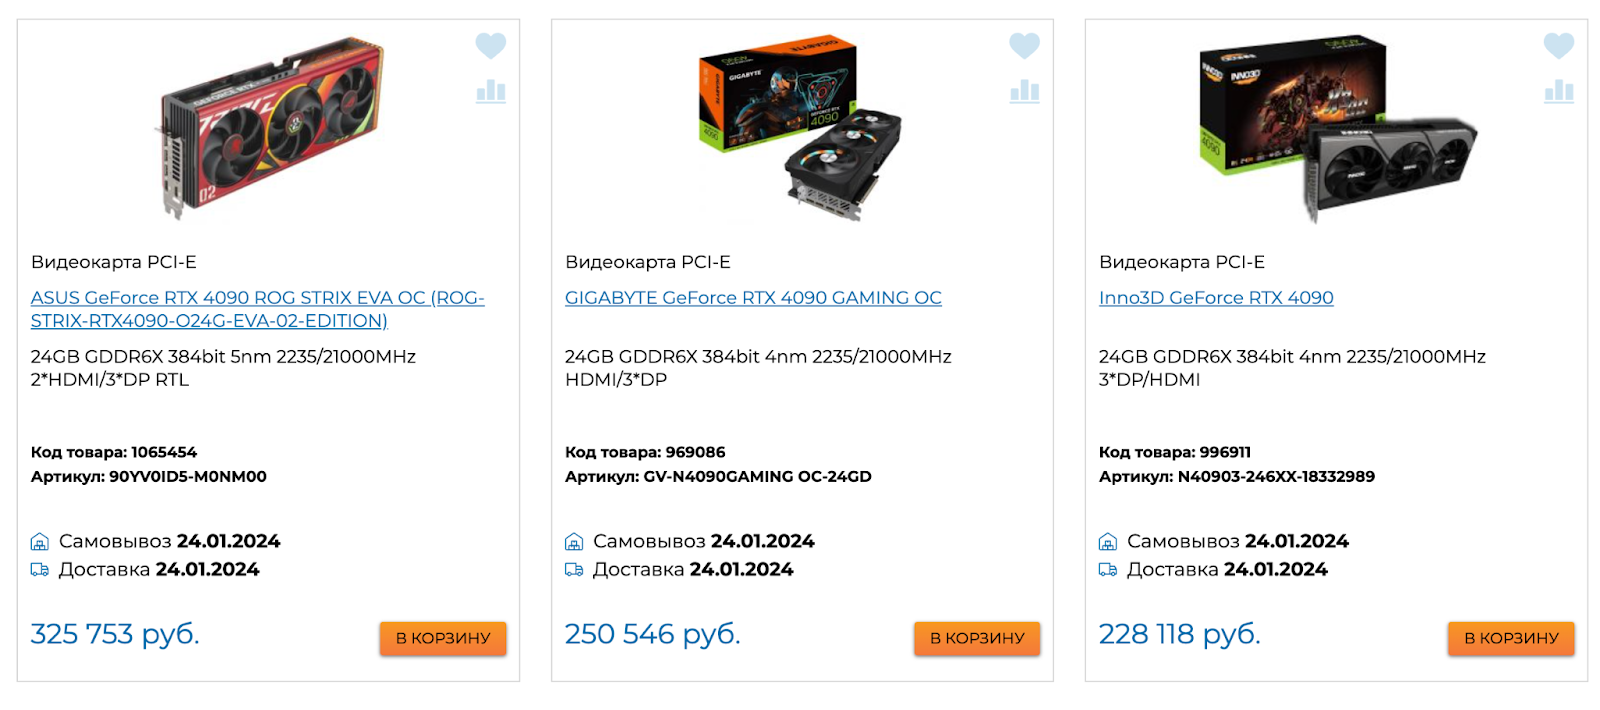 Видеокарты Nvidia GeForce RTX 4090 пользуются особенно высоким спросом, но в XCOM-SHOP.RU дефицитом и не пахнет, независимо от исполнения.